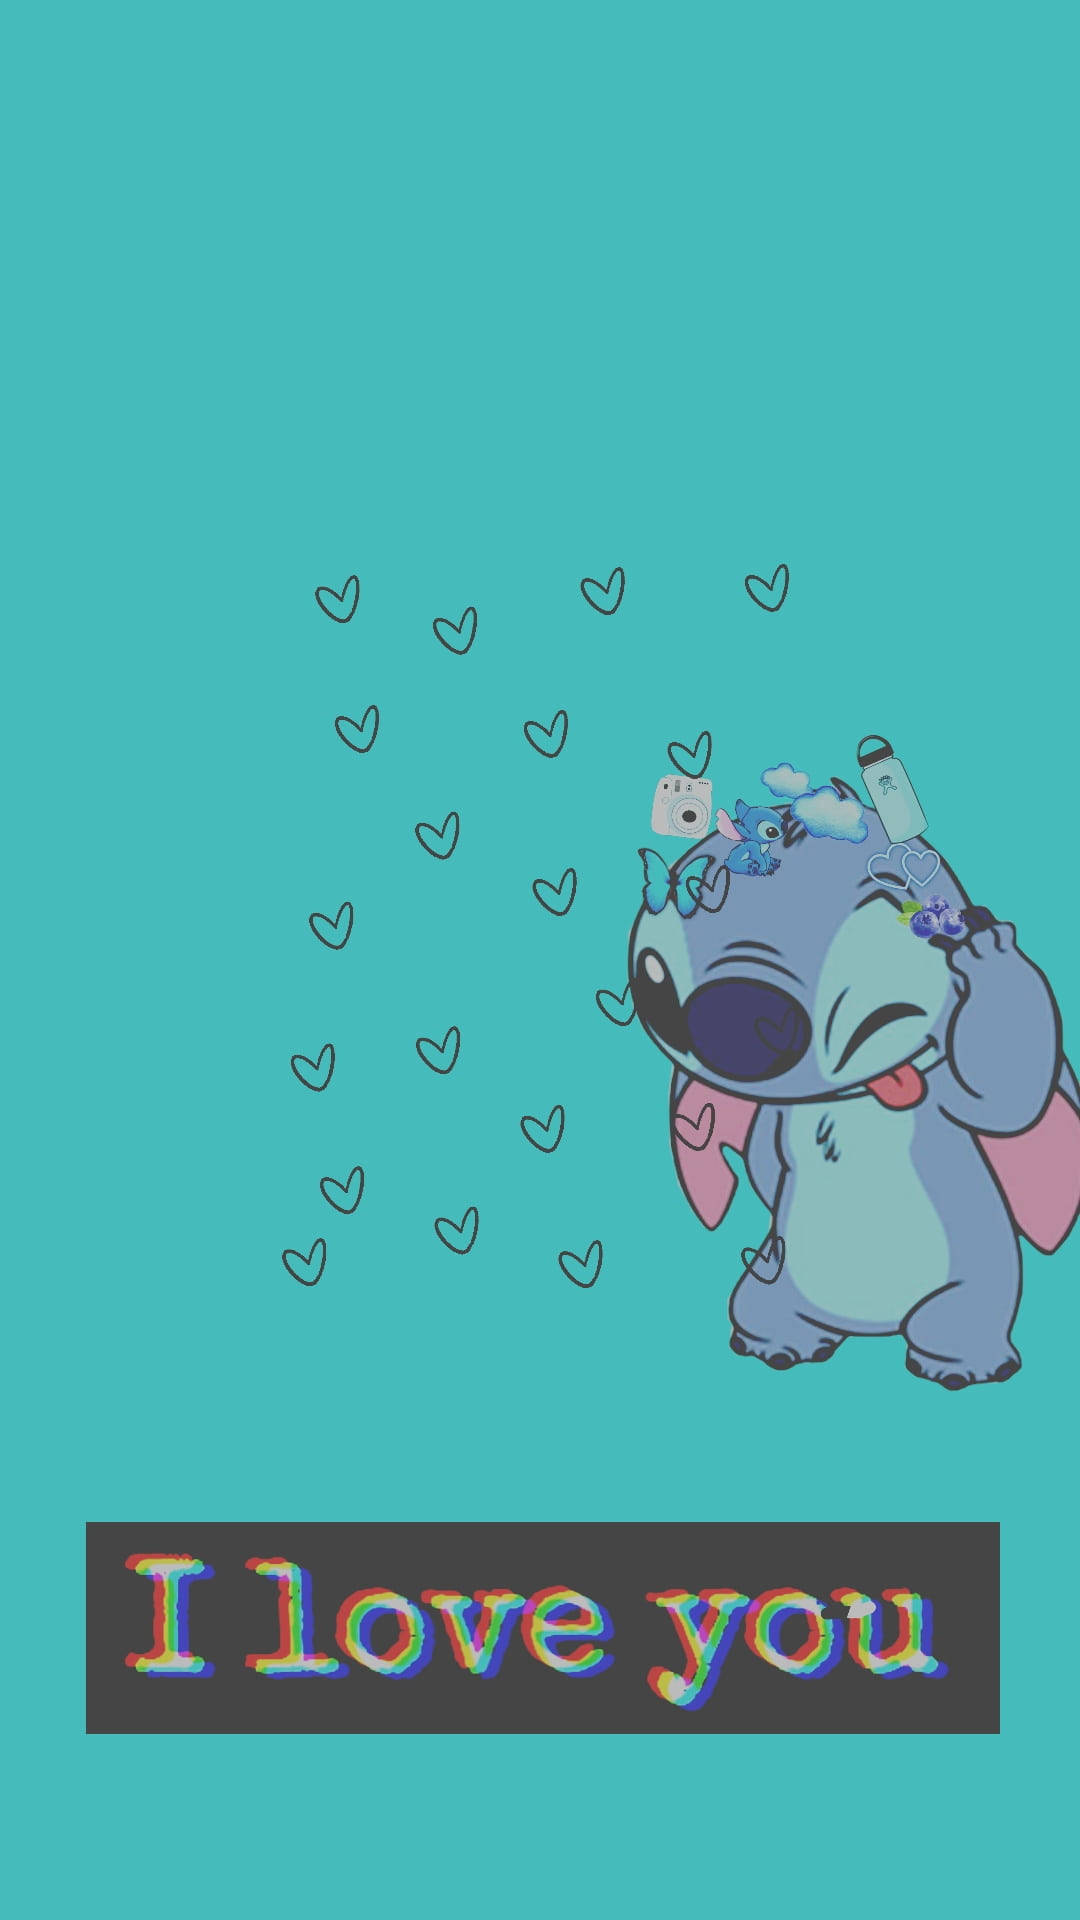 Shy Cute Disney Stitch Background